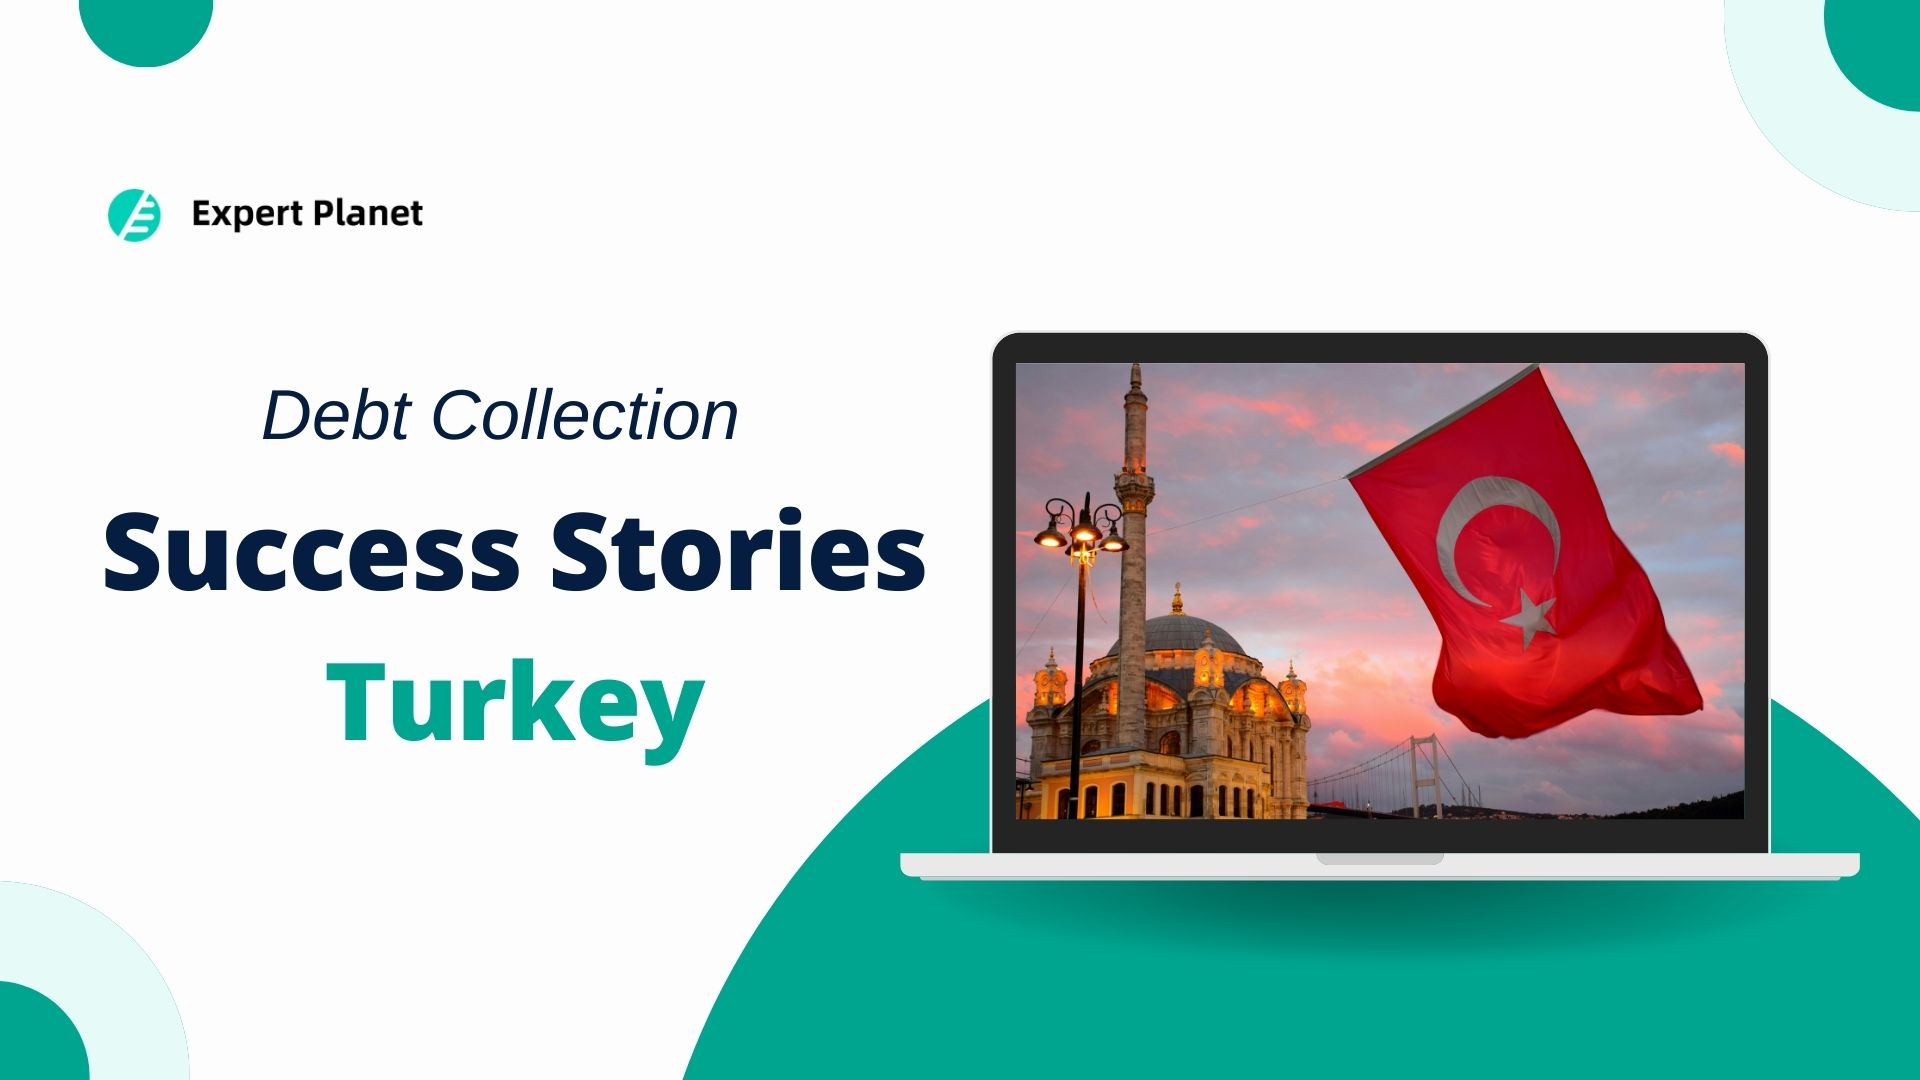 Turkey debt collection success stories